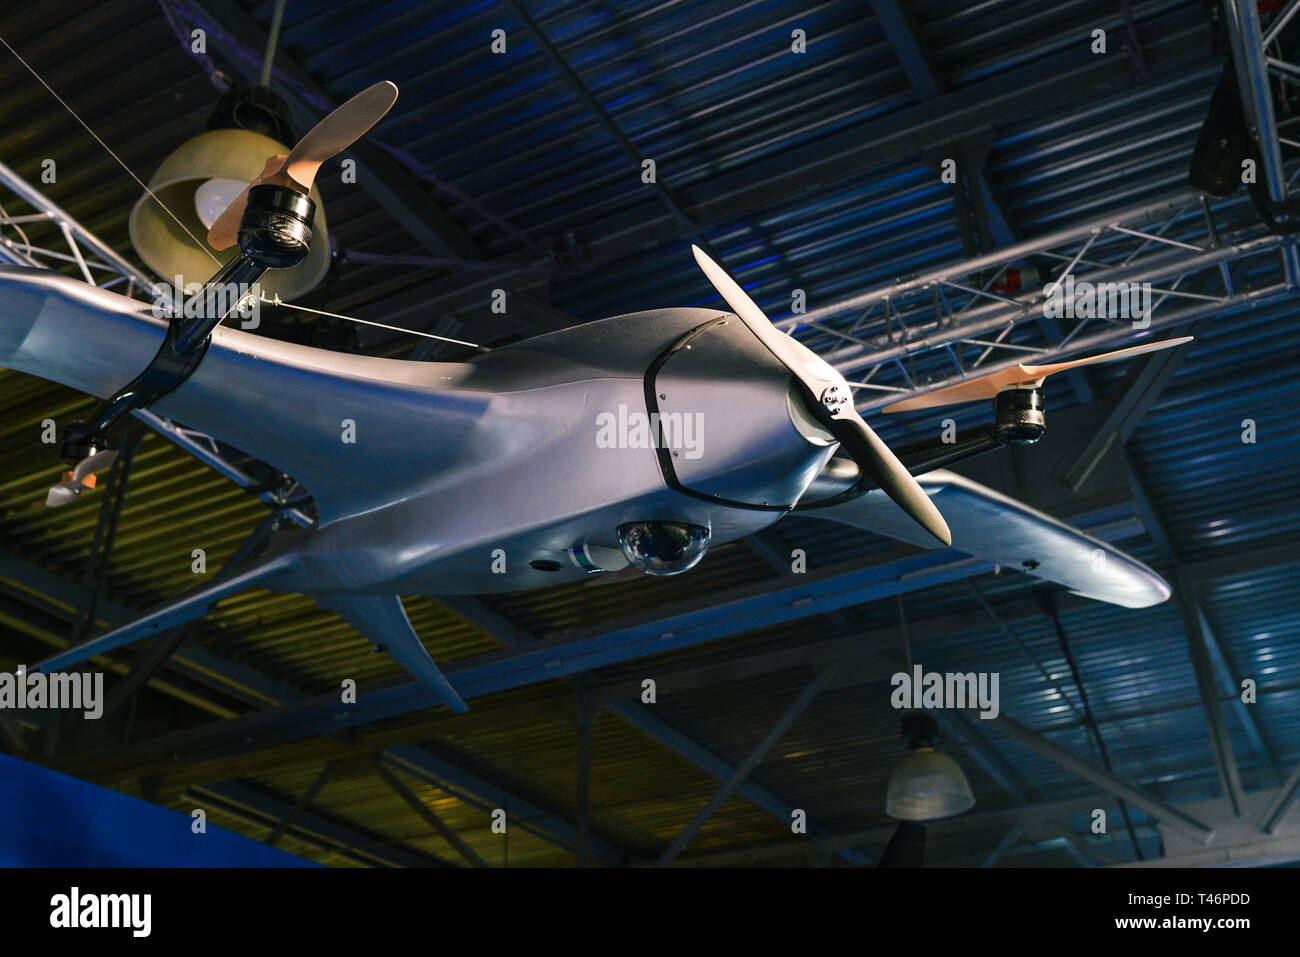 Vehículo aéreo no tripulado. Aviones militares no tripulados. Zumbido en el hangar Foto de stock